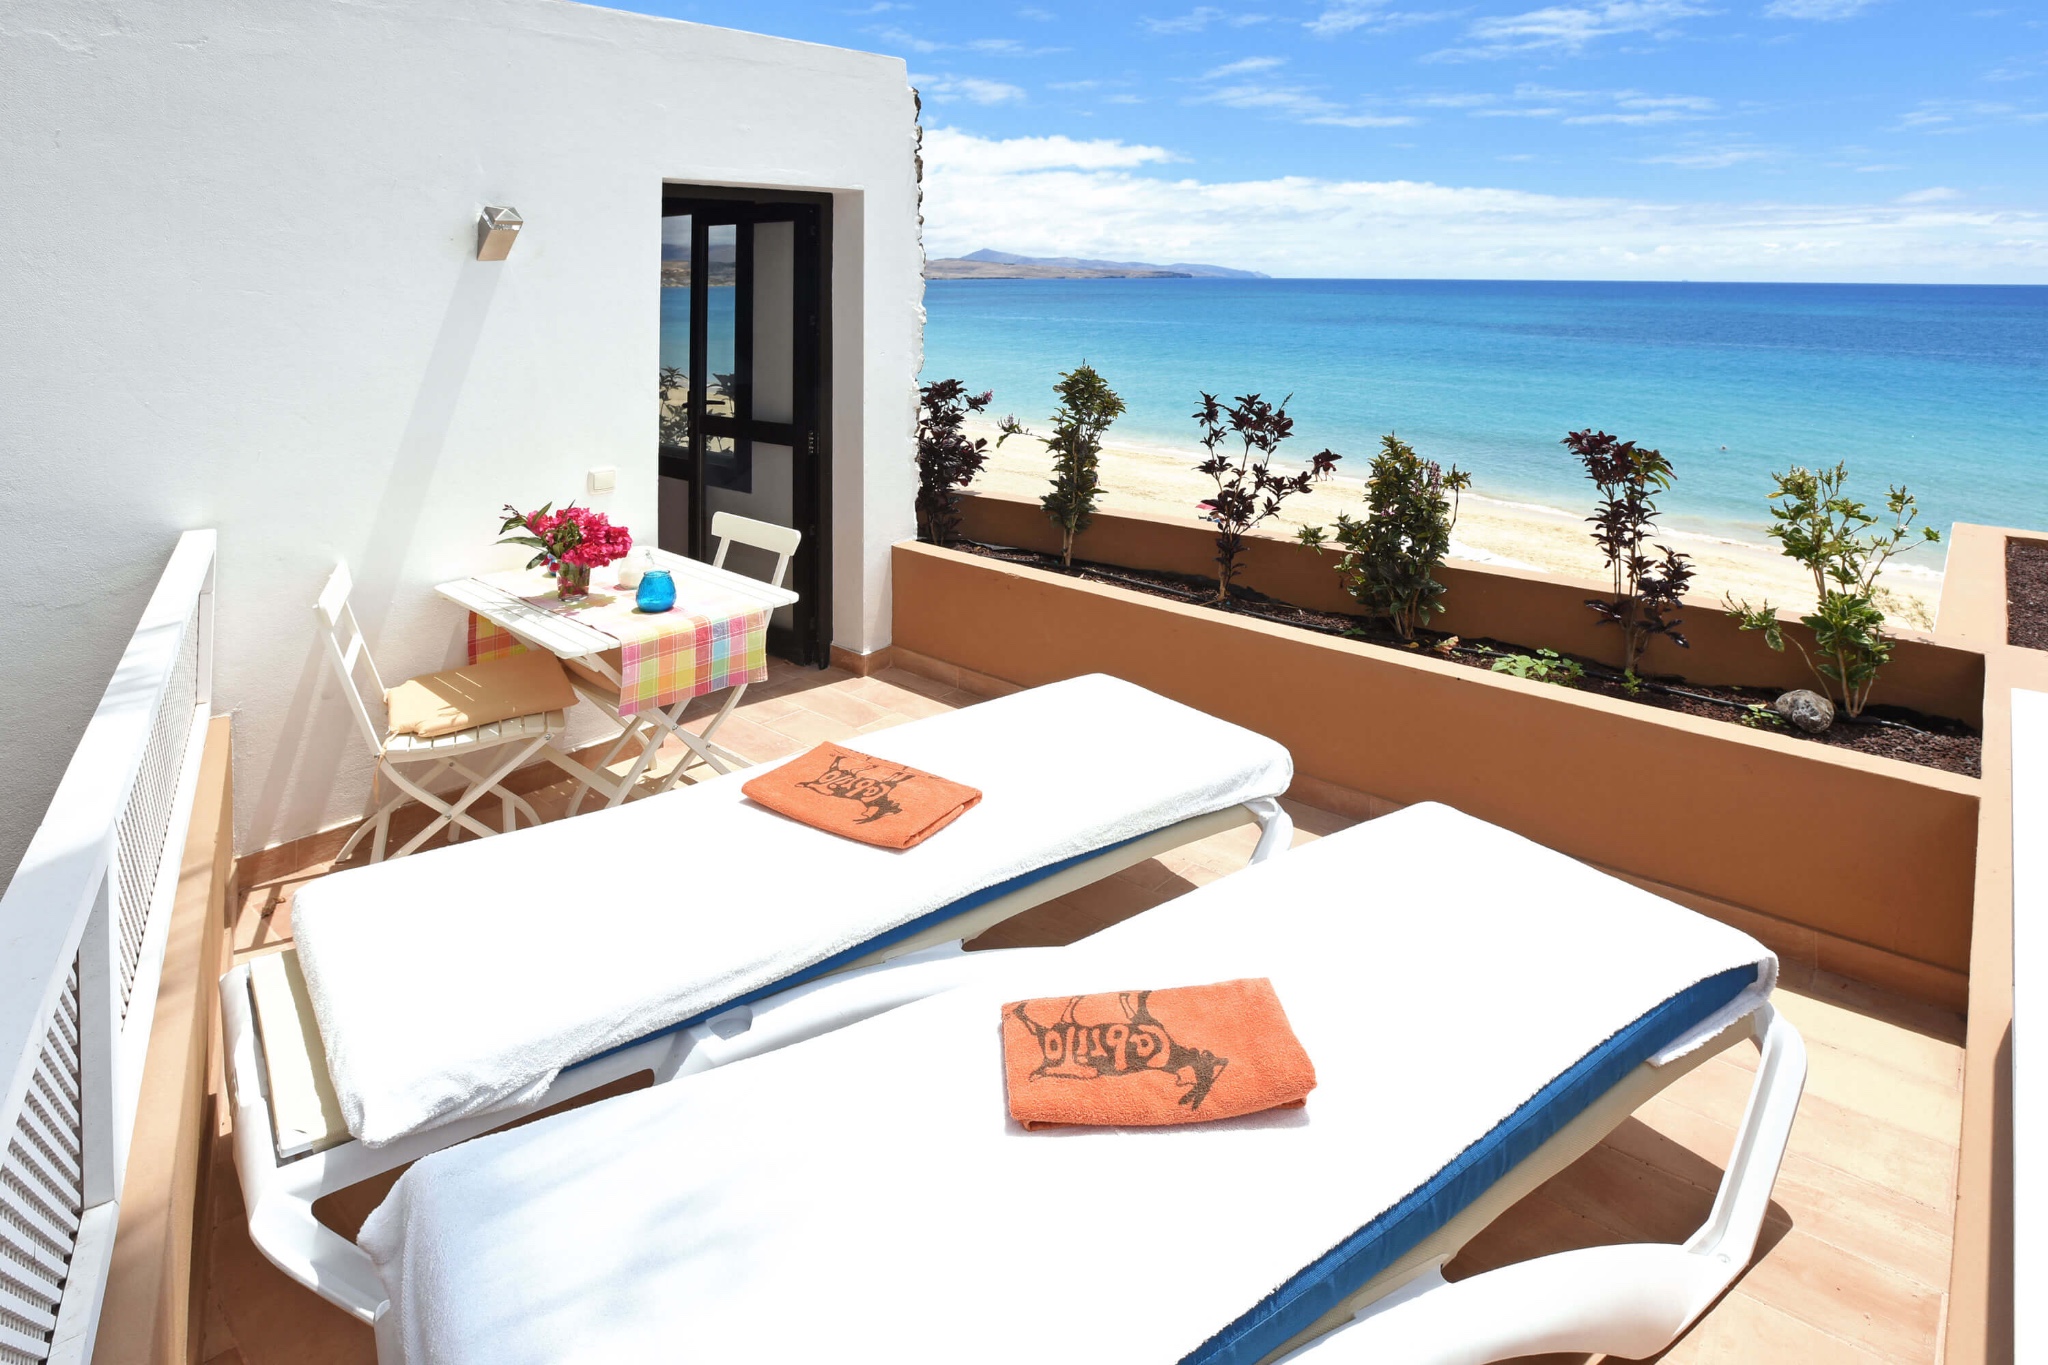 De moderne woning voor 2 personen is gelegen aan het strand van Costa Calma met een prachtig uitzicht op zee